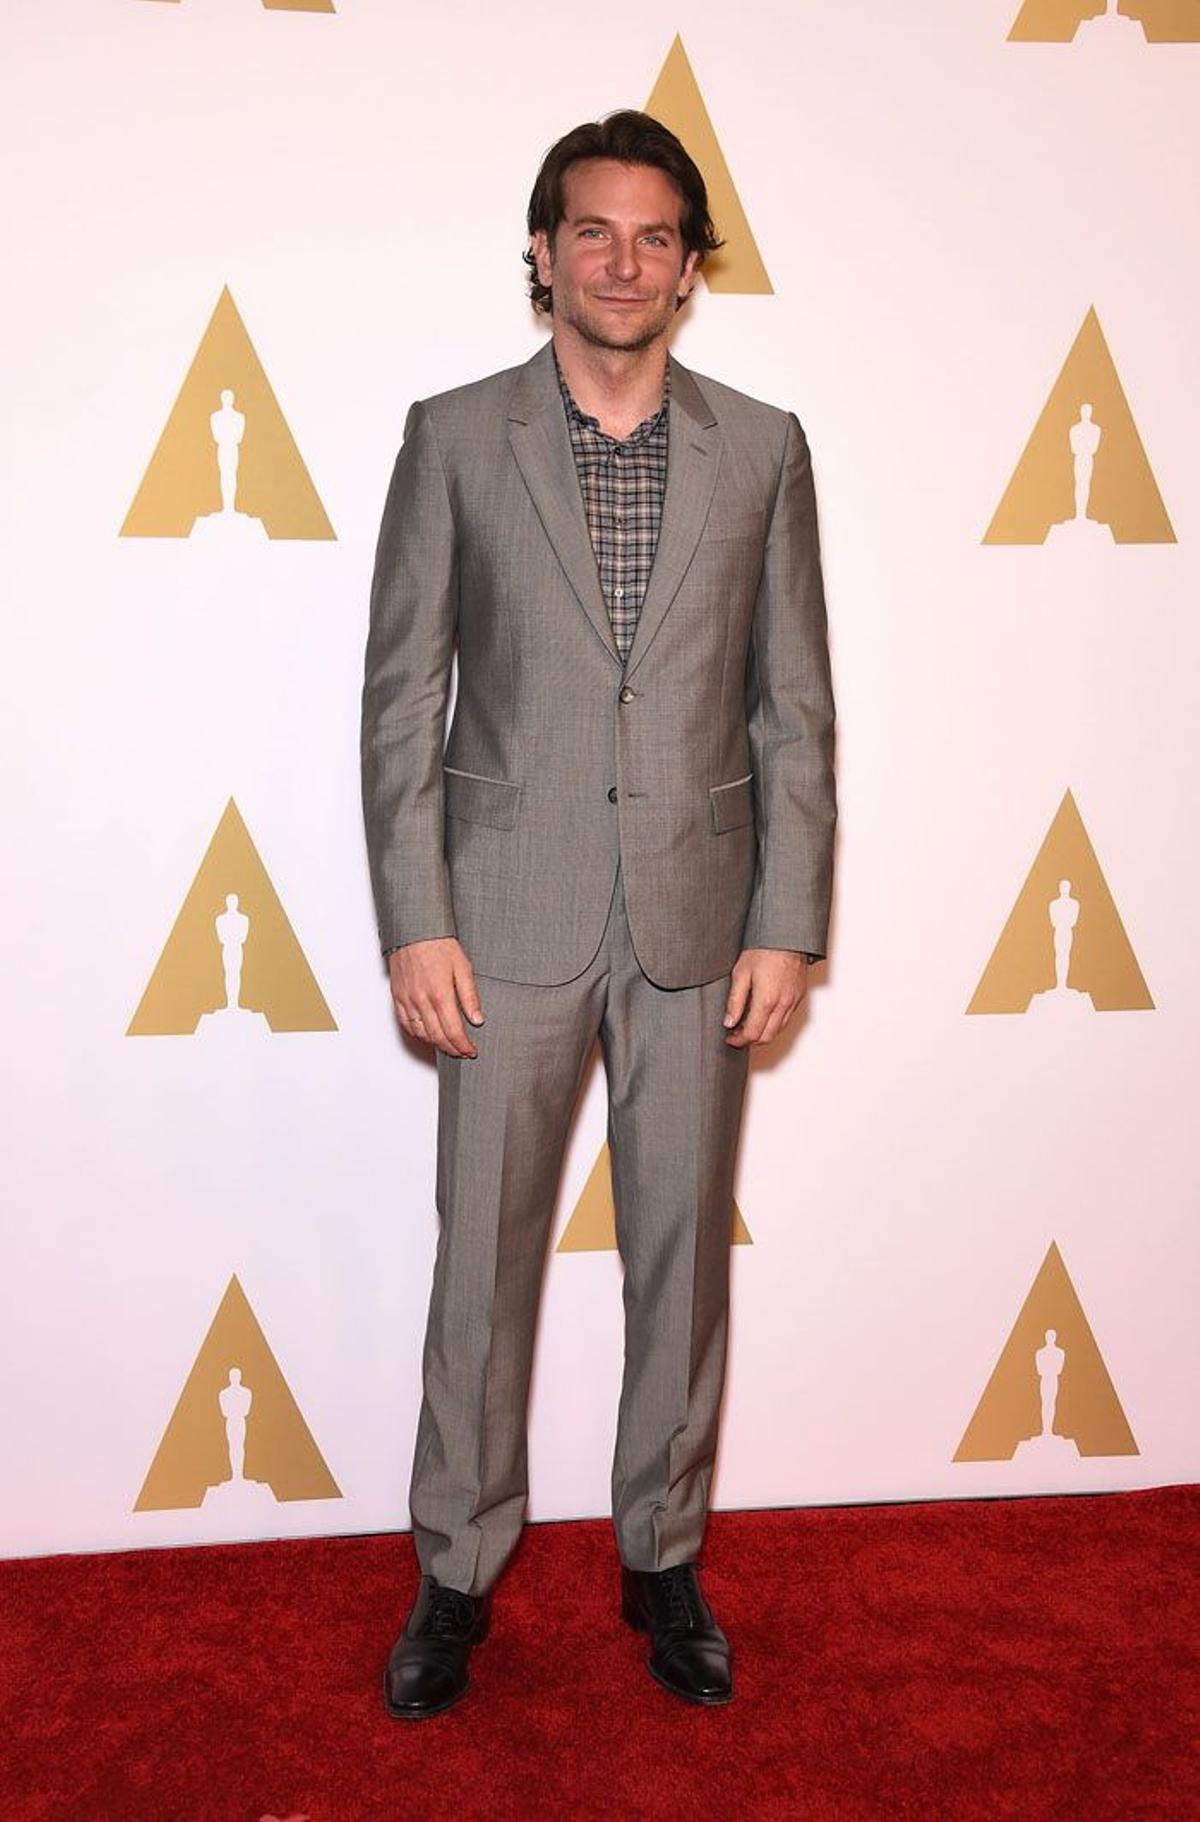 Almuerzo de los nominados Oscar 2015: Bradley Cooper